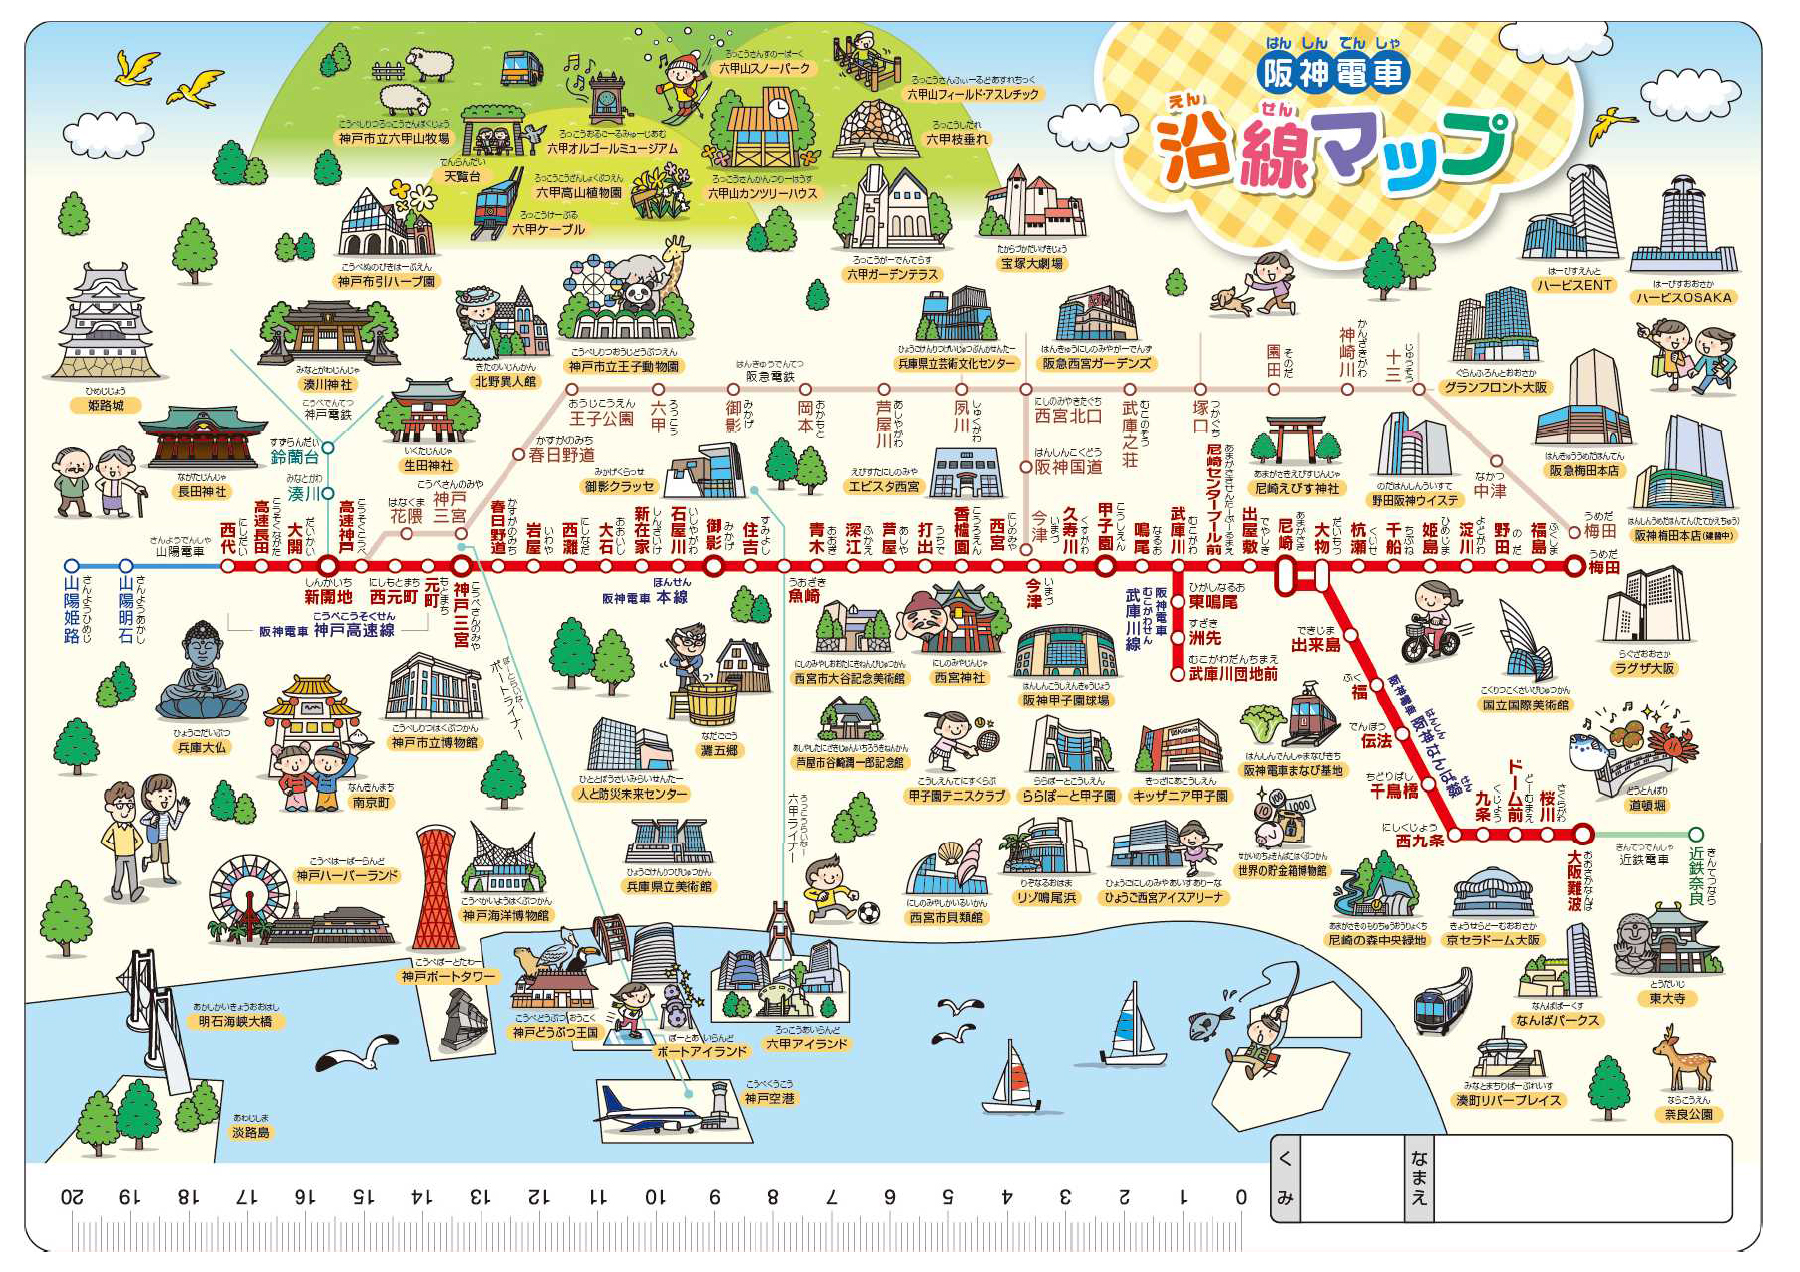 裏面は阪神電車の沿線マップになっています